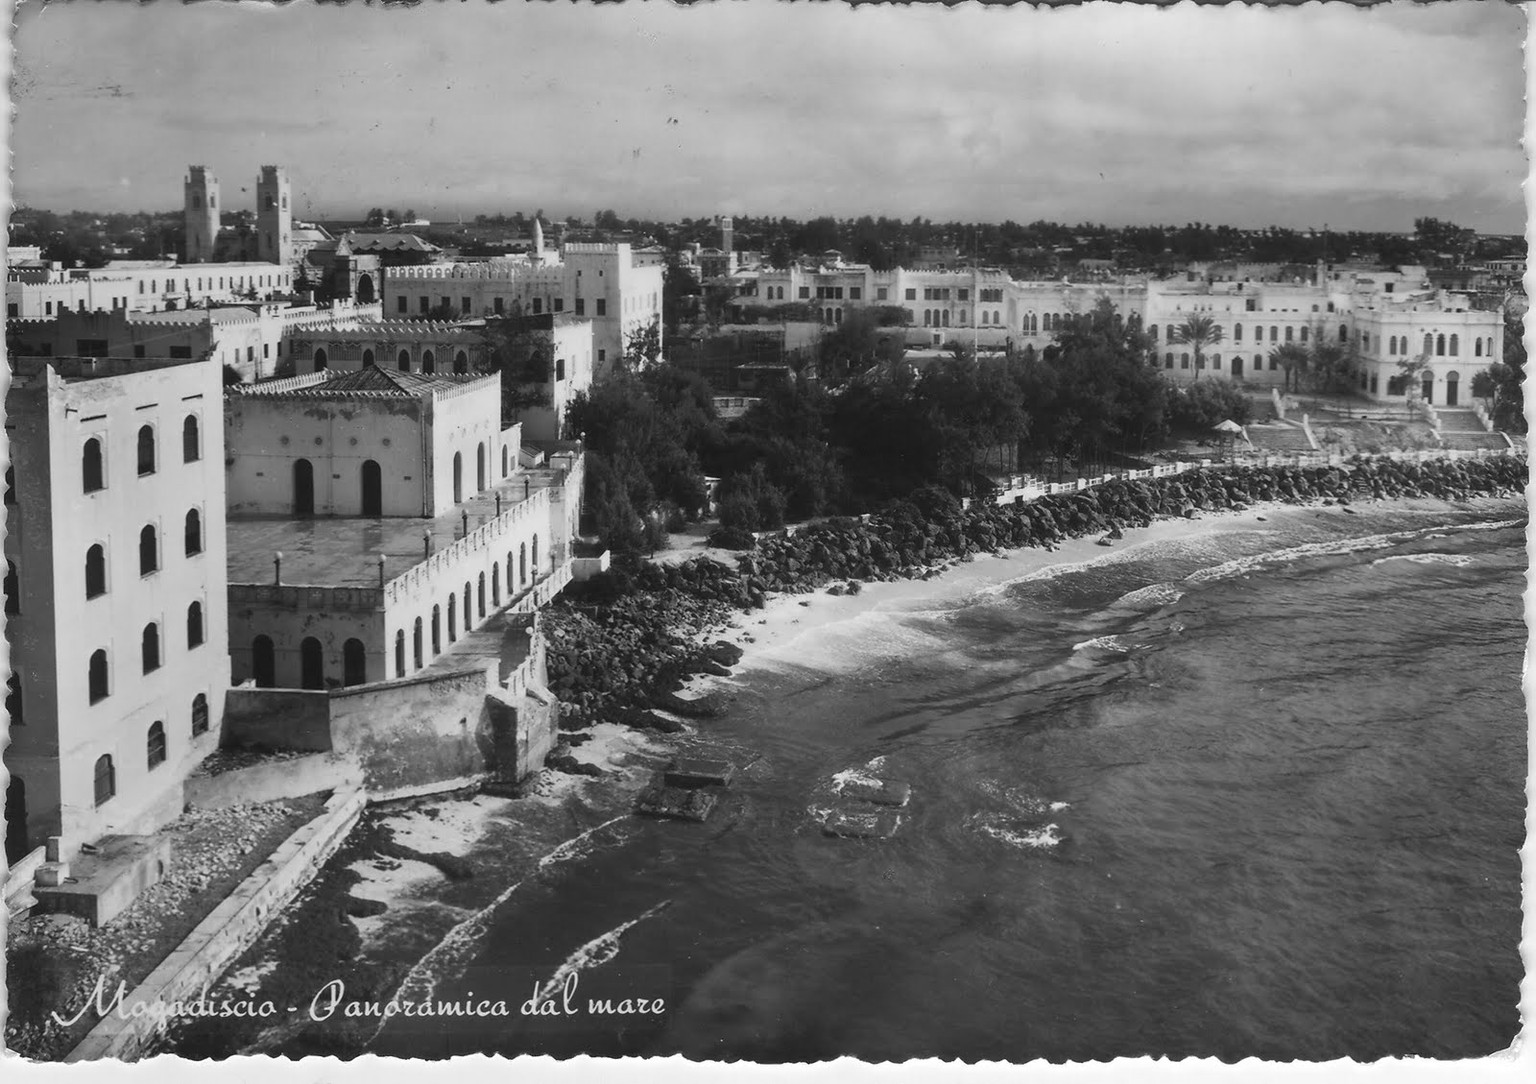 1952 aufgegebene Postkarte aus Mogadischu. Die italienische Aufschrift «Mogadiscio – Panoramica dal mare» zeugt von der Kolonialzeit, als Mogadischu Hauptstadt von Italienisch-Somaliland (1905-1941) w ...